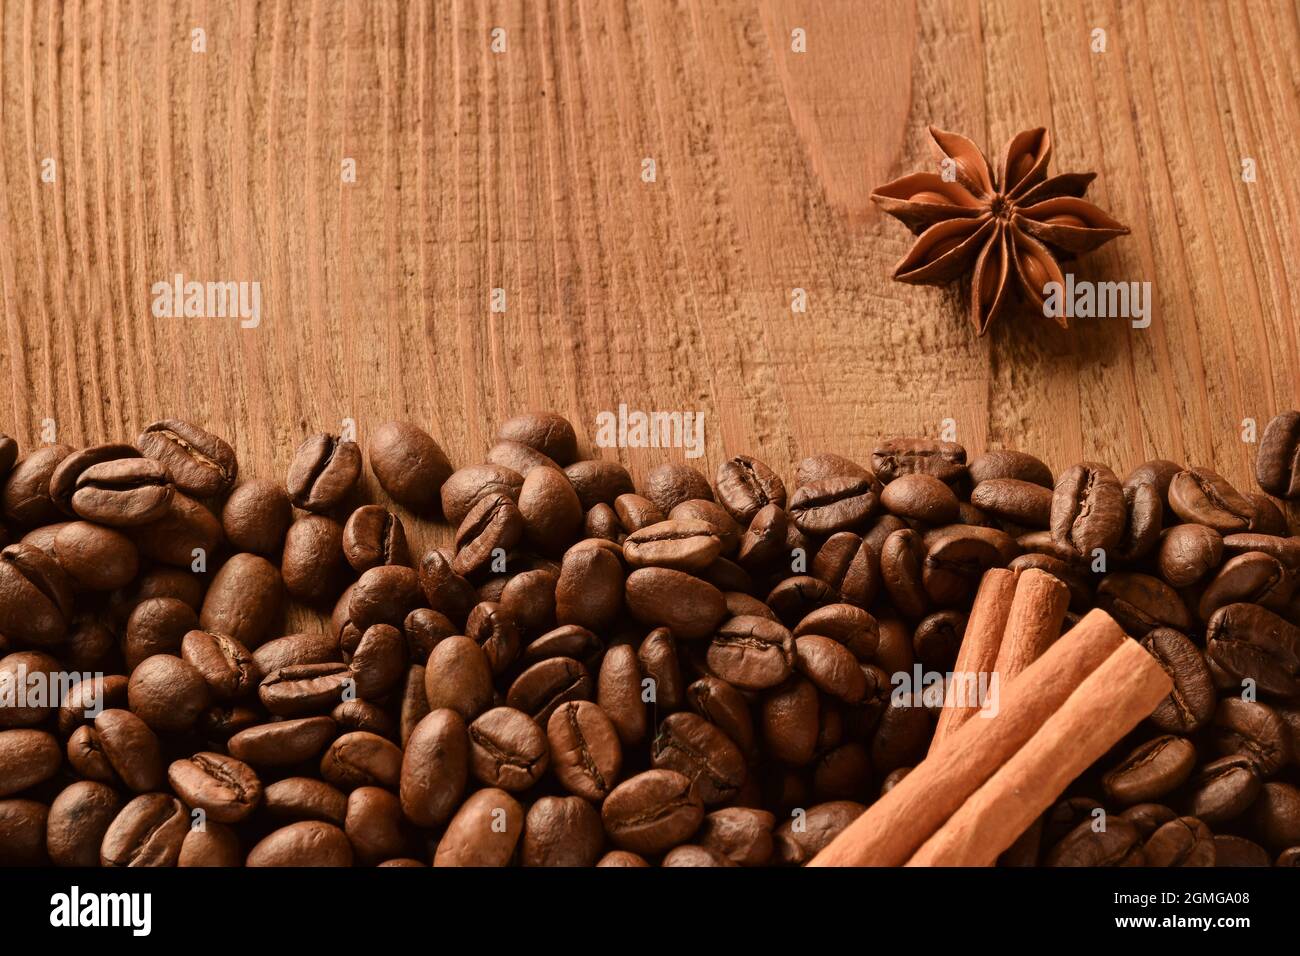 Saupoudrer les grains de café au bas de la photo, ainsi que l'anis et la cannelle. Photo ci-dessus de fond en bois marron vide Banque D'Images